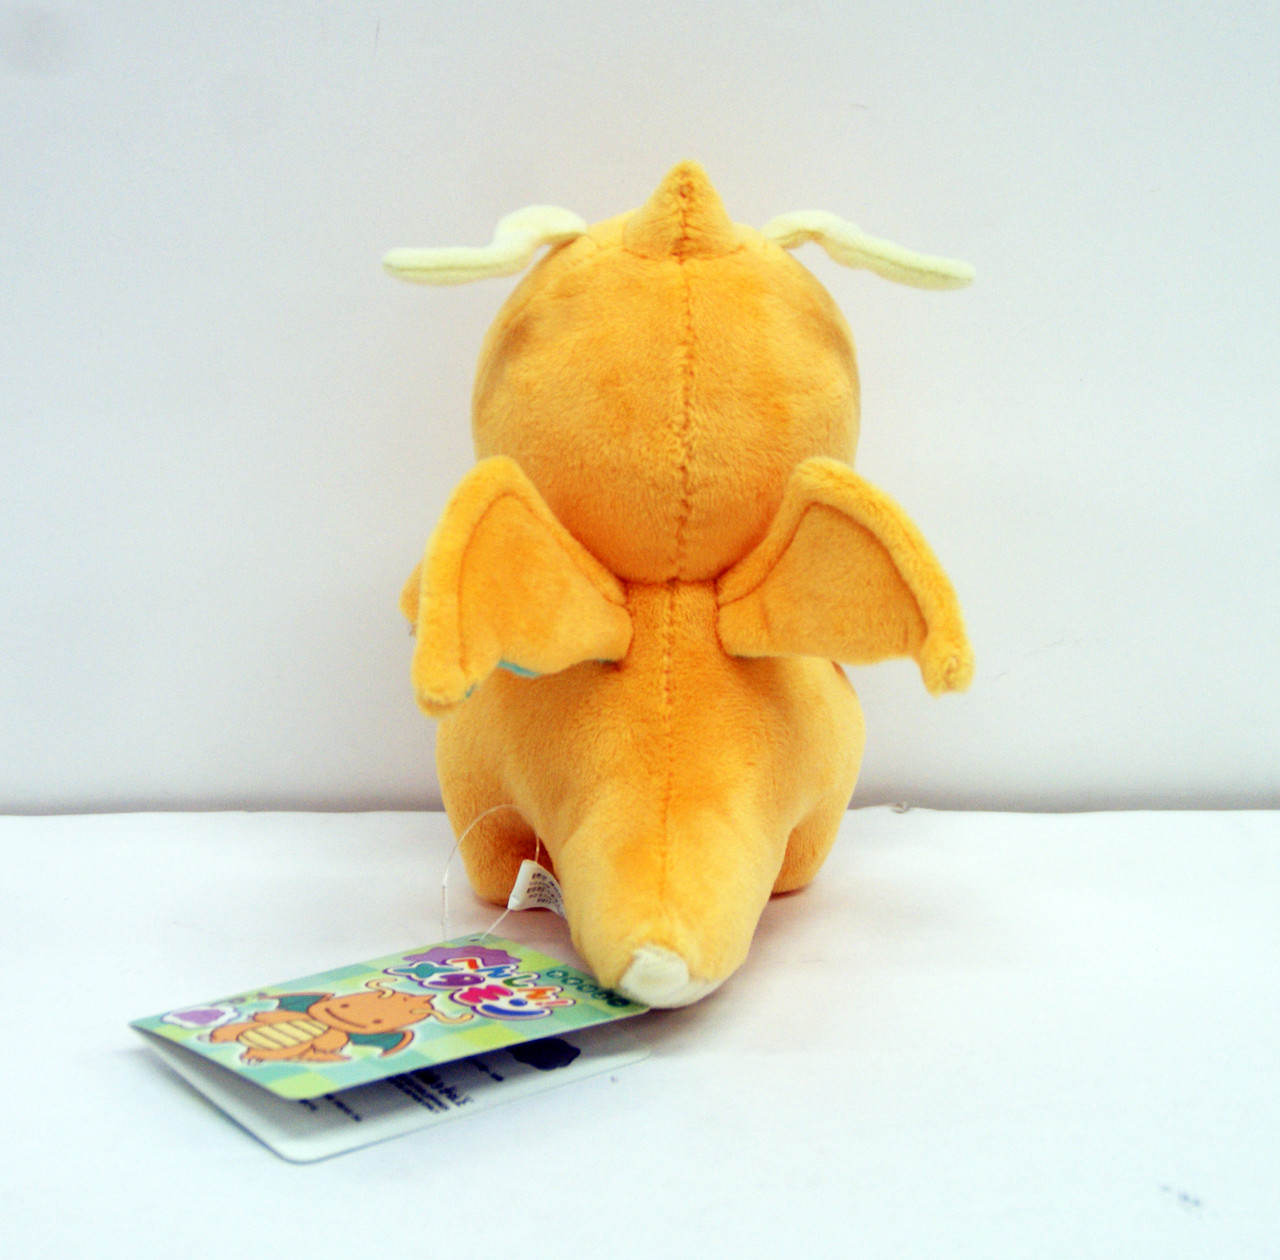 Pokemon Center 2018 Figure Collection Transform Ditto vol.5 Dragonite